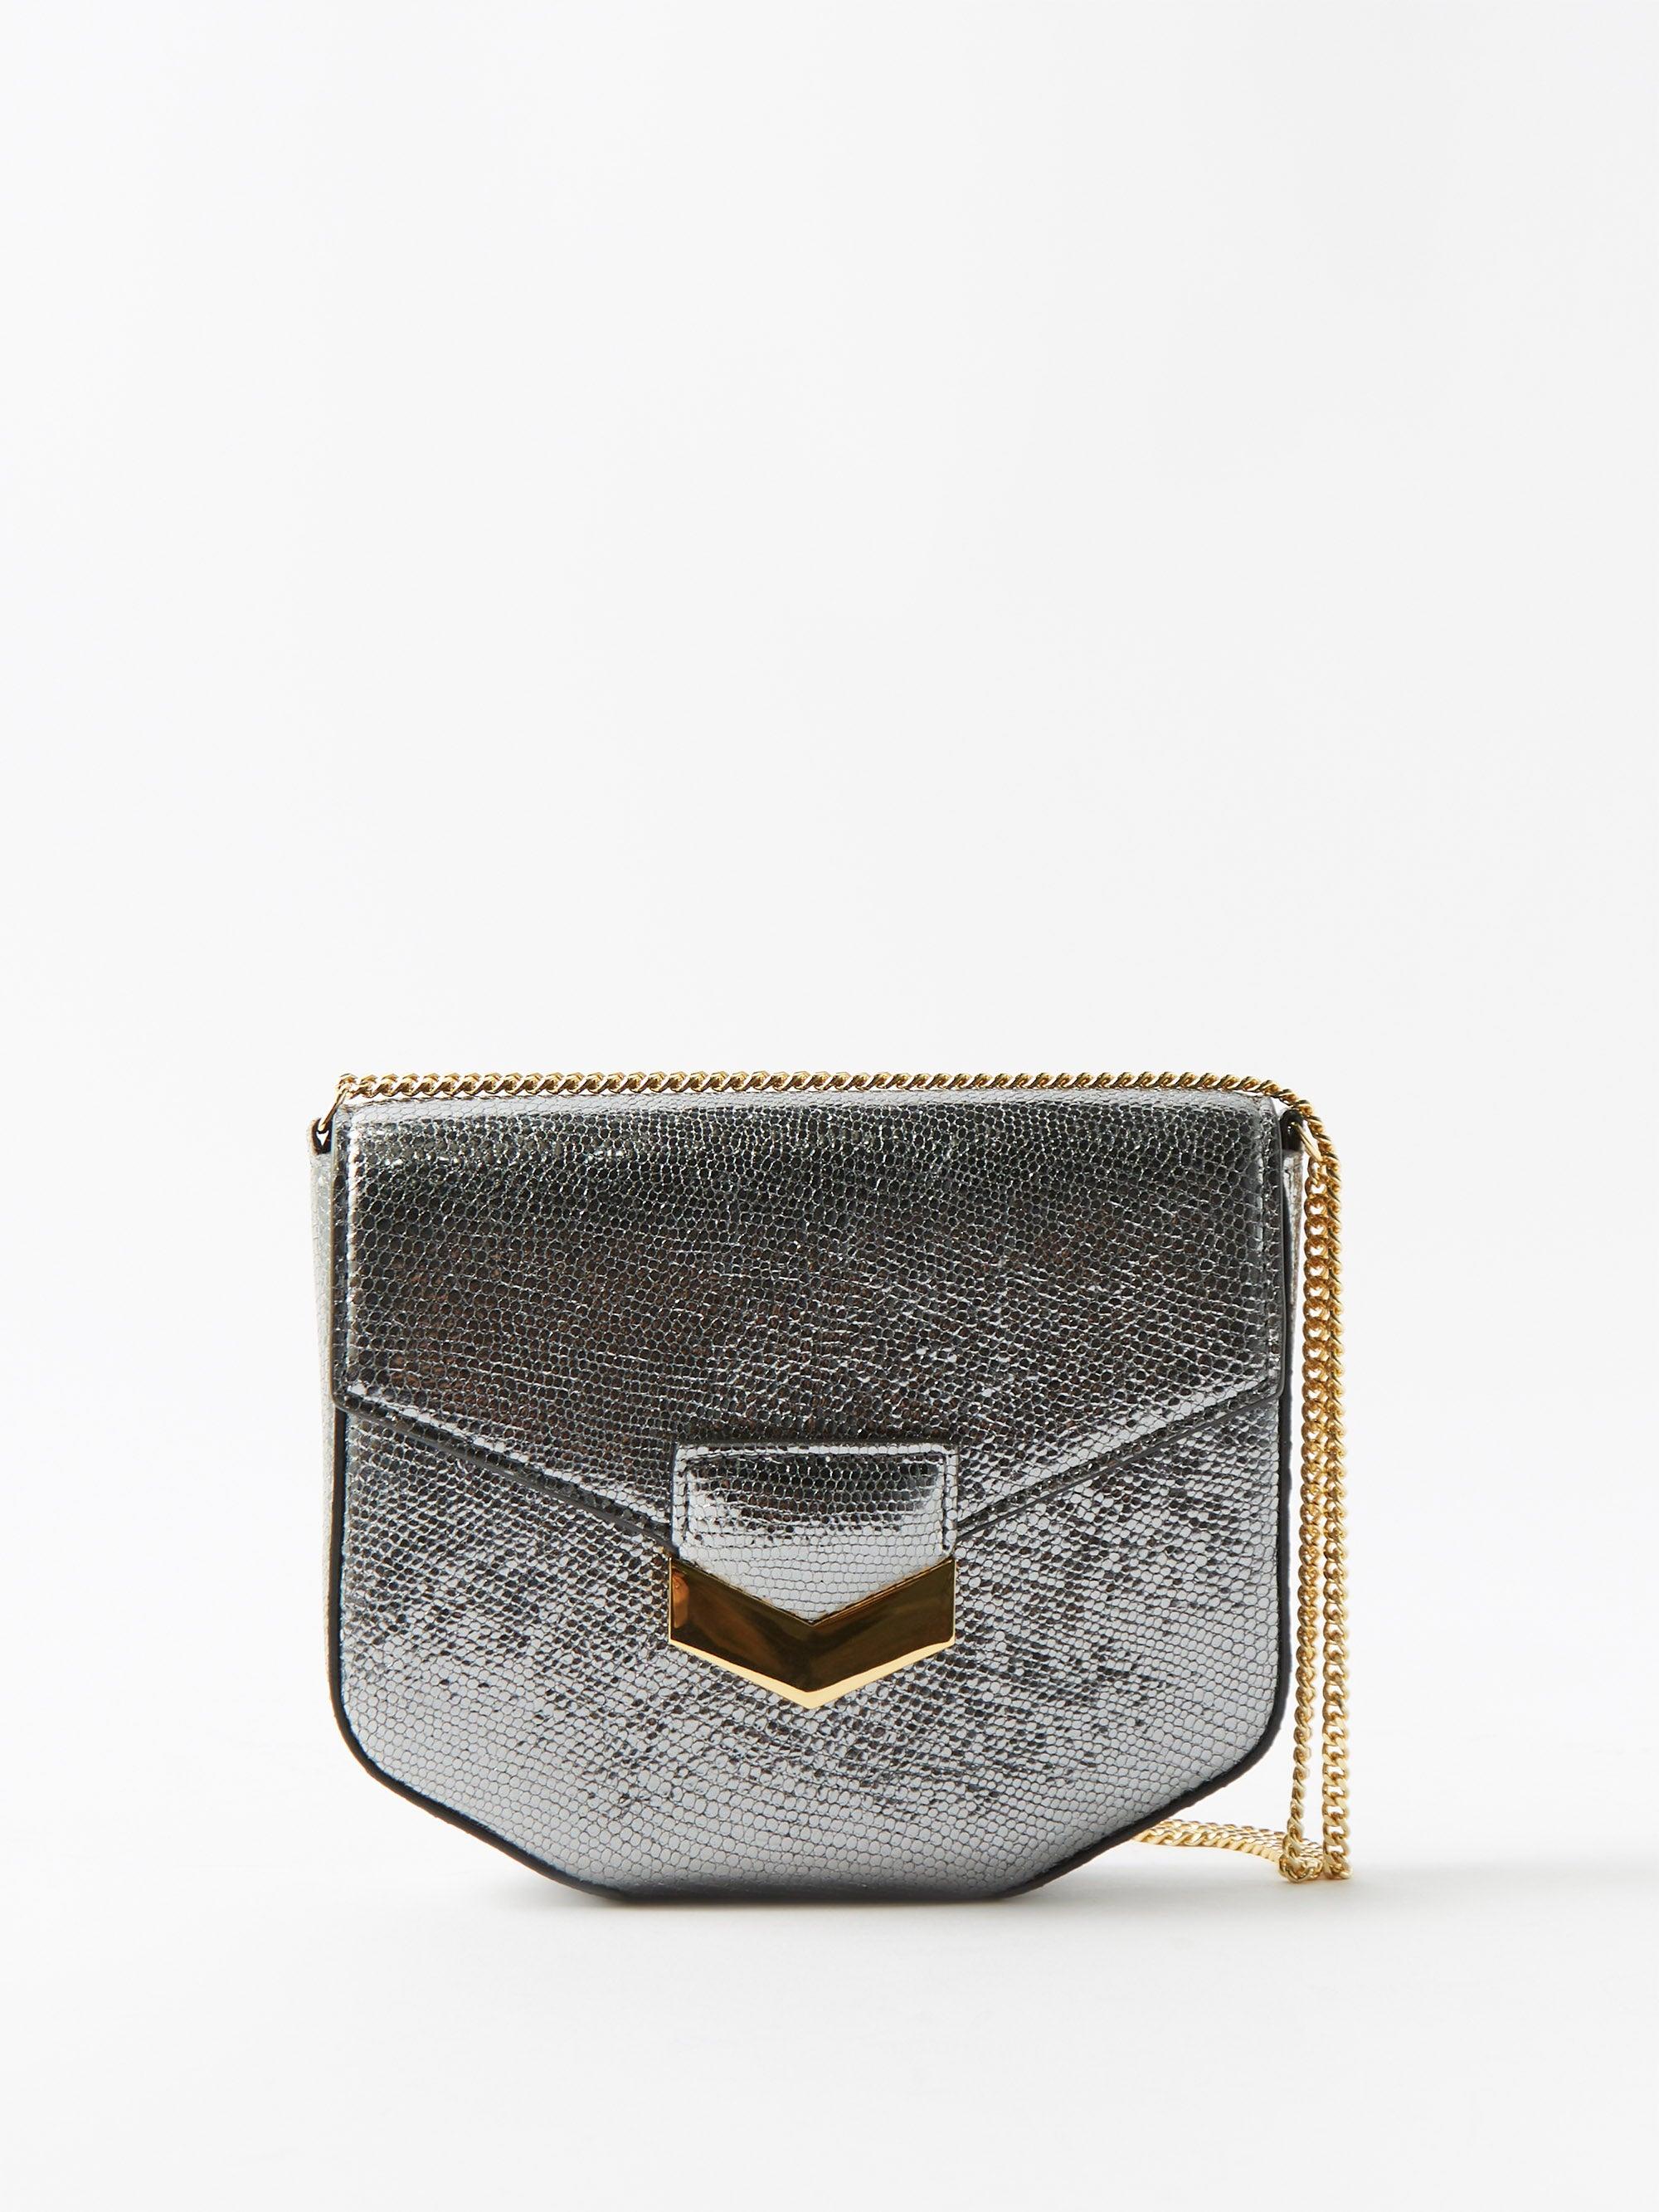 DeMellier London Mini Metallic-leather Cross-body Bag in Gray | Lyst